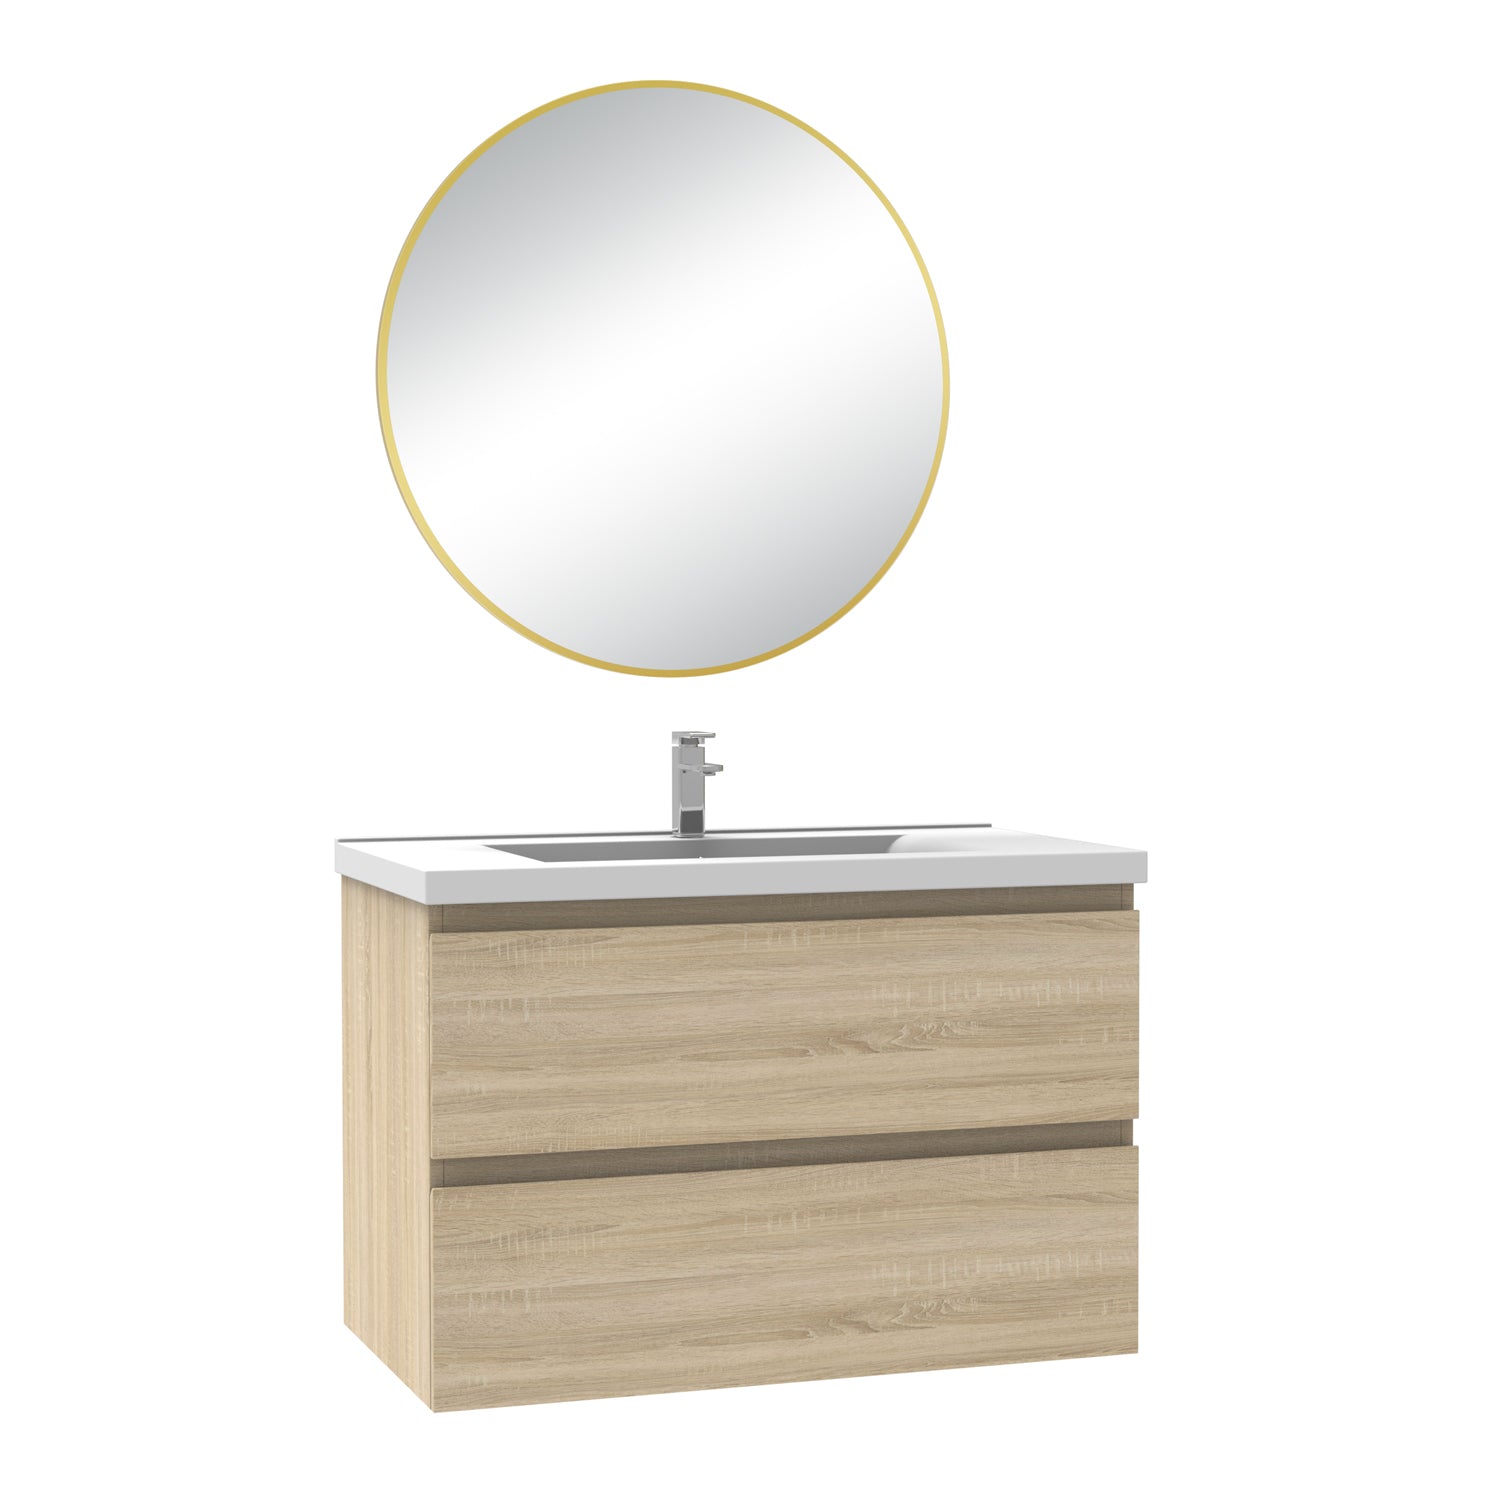 Meuble salle de bain simple vasque 60cm blanc/Anthracite/Chêne Wotan meuble acve rond miroir - Aica -Livraison gratuite